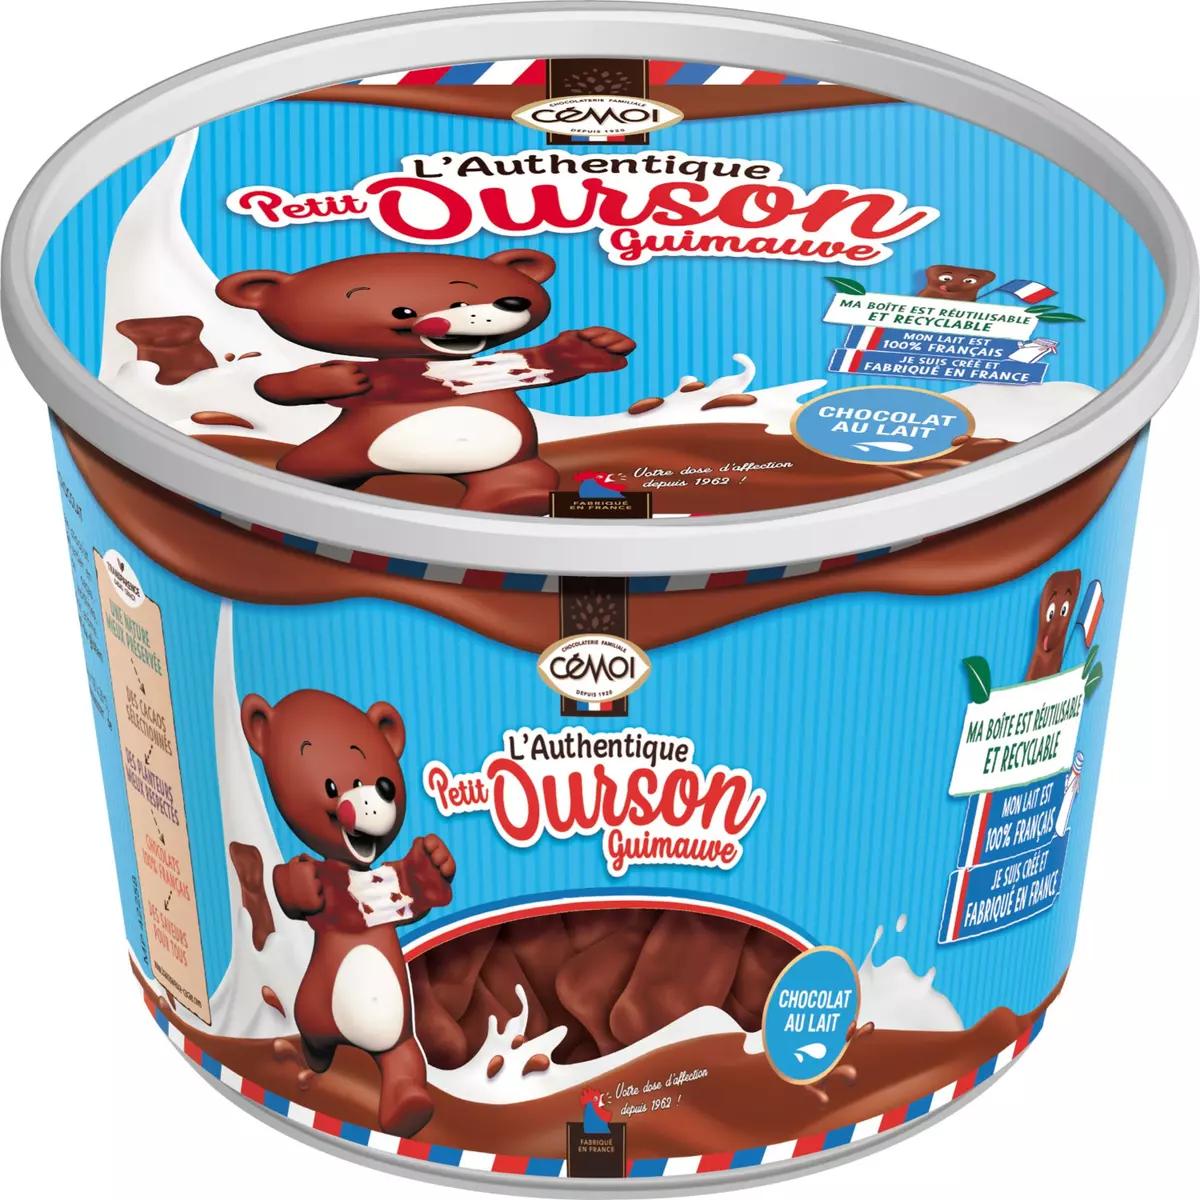 CEMOI L'authentique petit ourson guimauve au chocolat au lait 421g